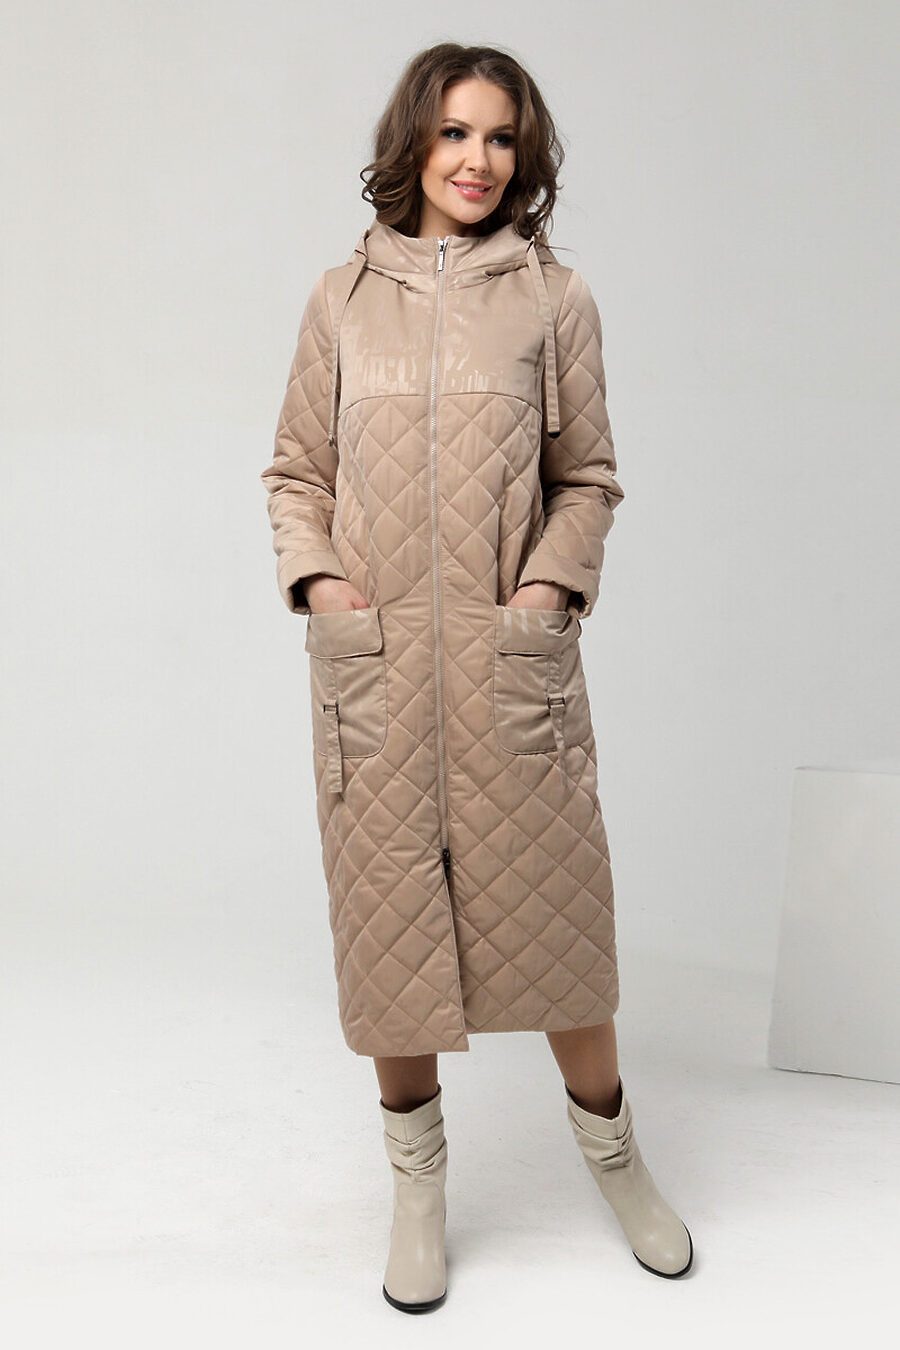 Пальто DIWAY (684809), купить в Moyo.moda